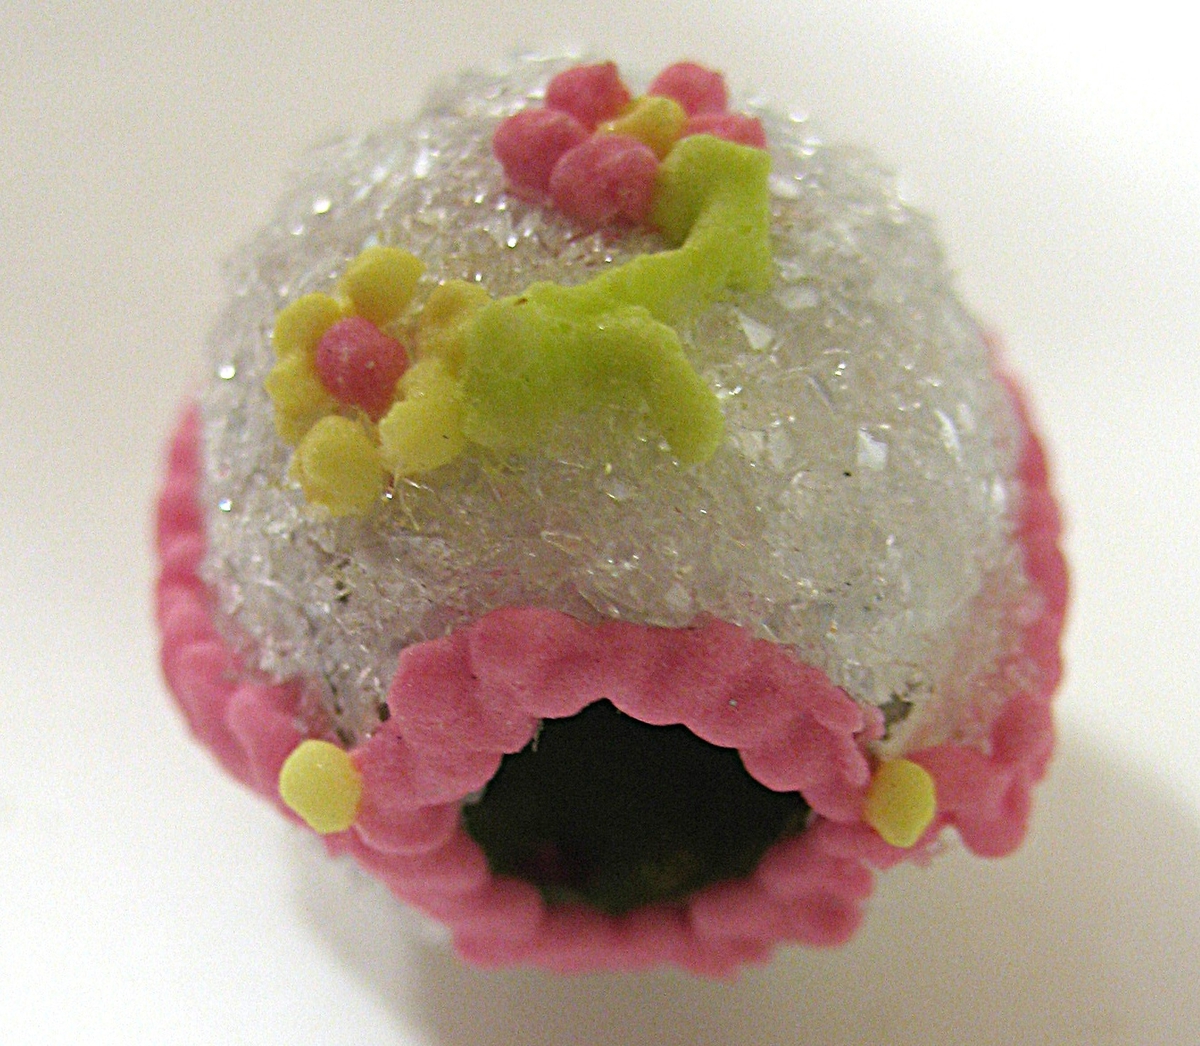 Litet tittägg tillverkat av socker. Ägget är vitt med rosa dekor runt öppning och sidor. På ovansidan finns två blommor. Inne i ägget finns en fågel i ett grönt landskap.
 

Ägget inköptes 1998 inför utställningen vårseder.